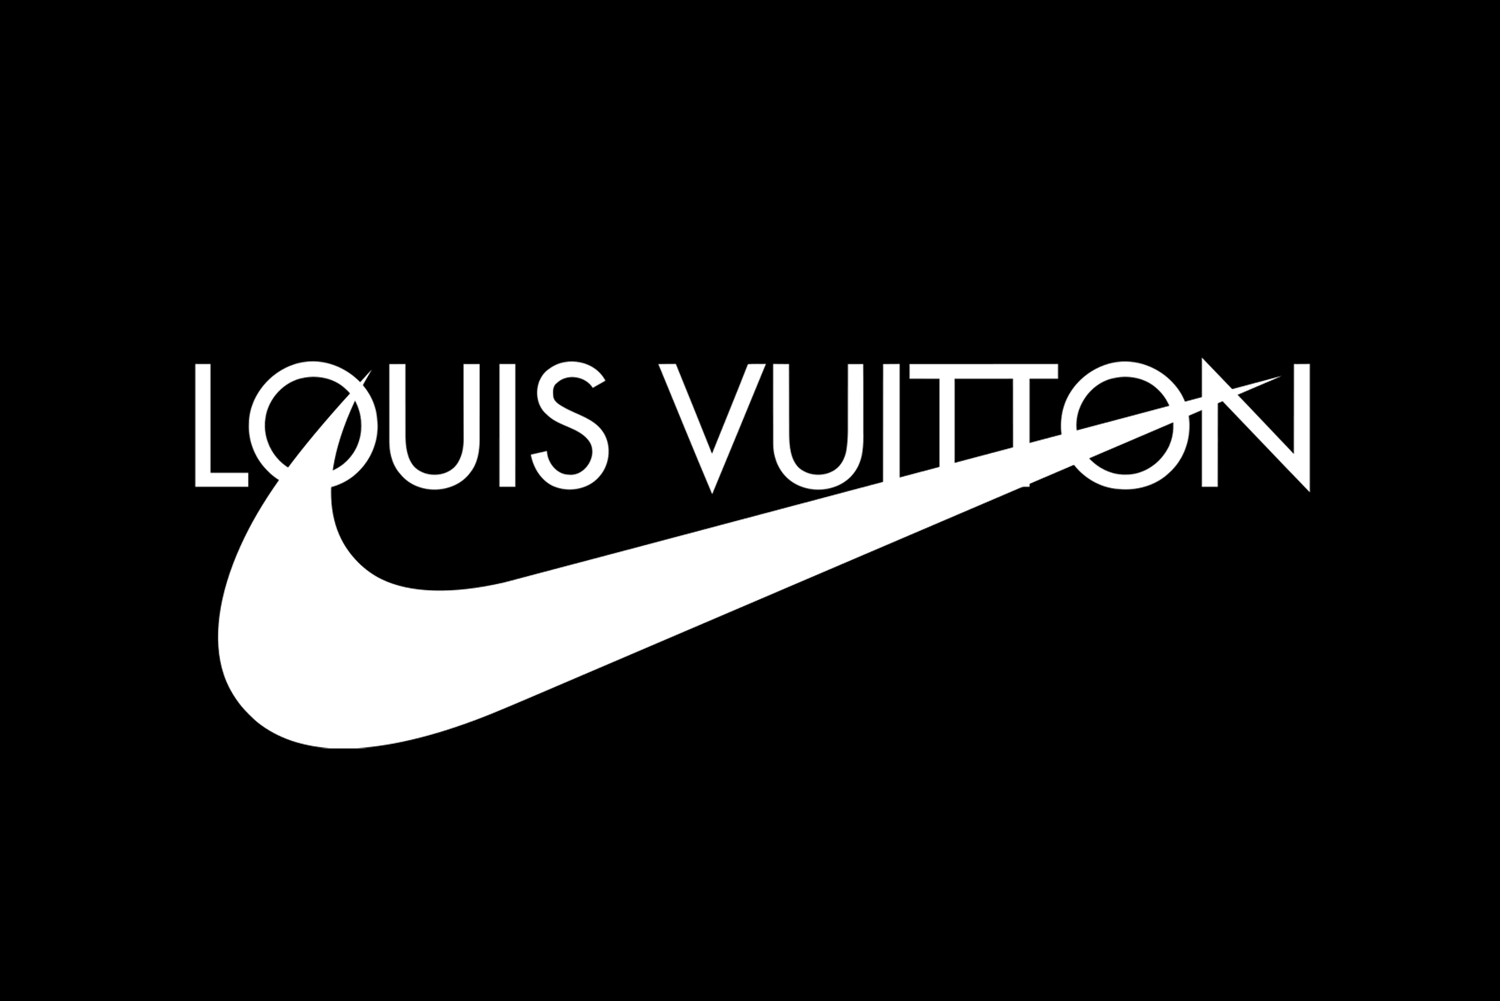 Louis Vuitton Adidas 